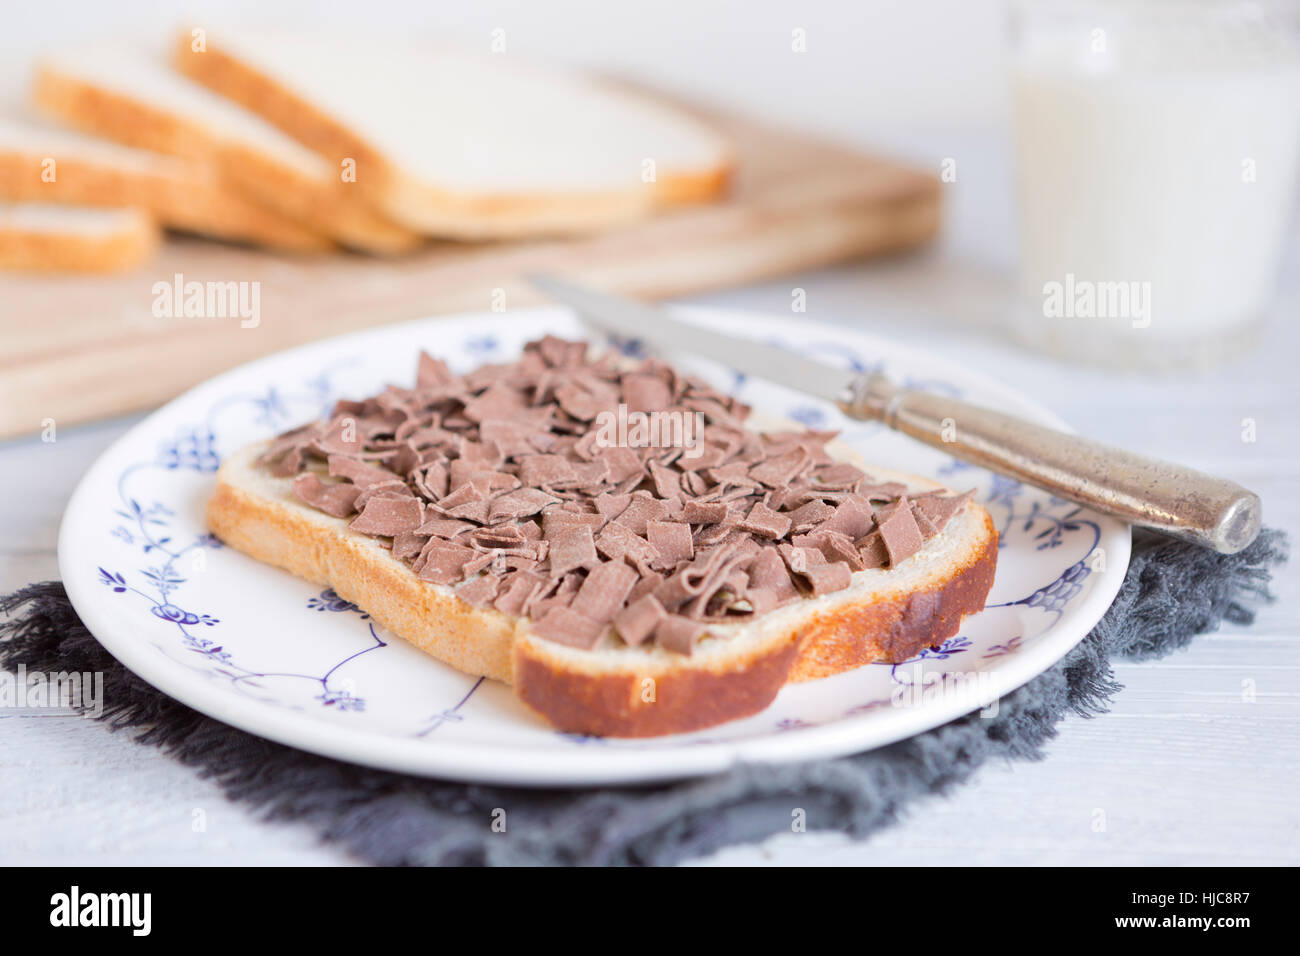 Ein Sandwich mit Schokostreuseln oder "Vlokken", niederländische traditionelle Speisen. Stockfoto